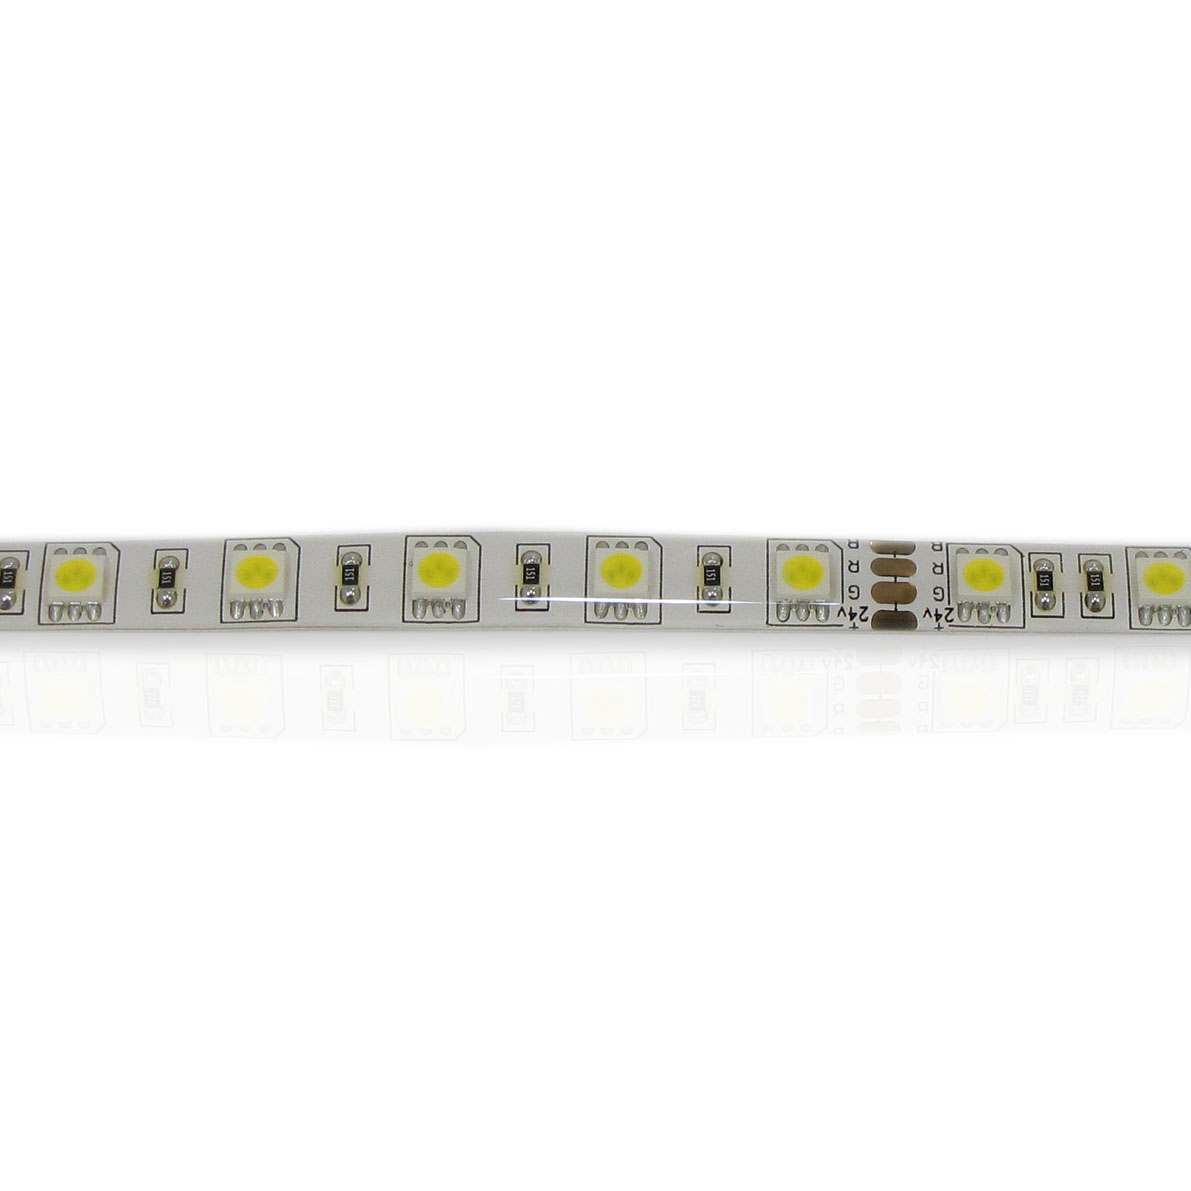 светодиодная лента standart pro class, 5050, 60led/m, warm white, 24v, ip65, артикул 30084